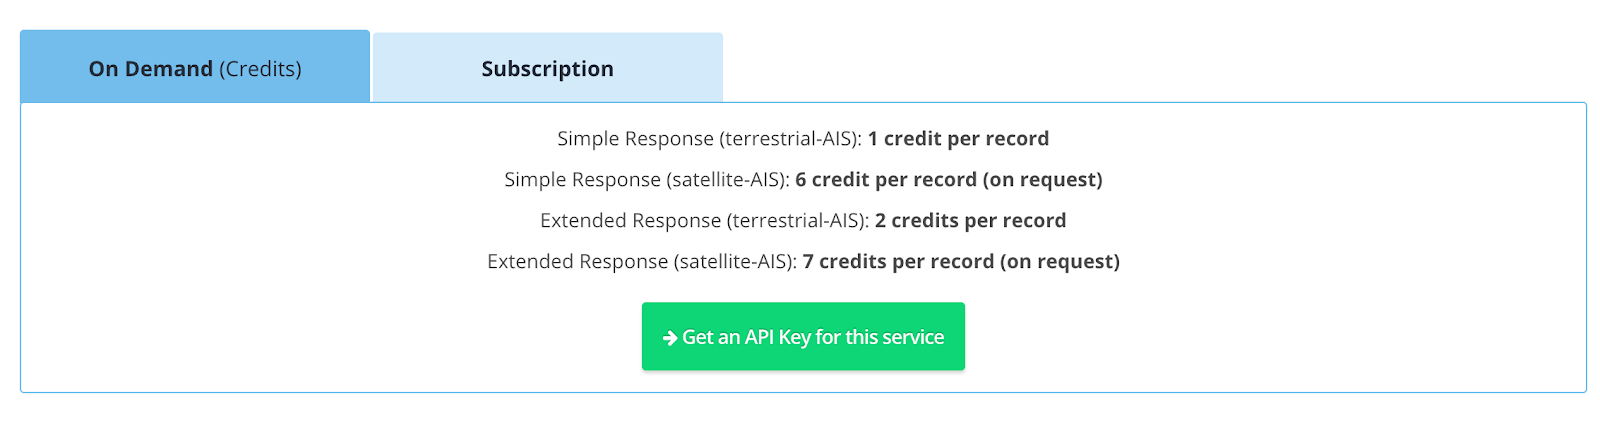 Get an API Key